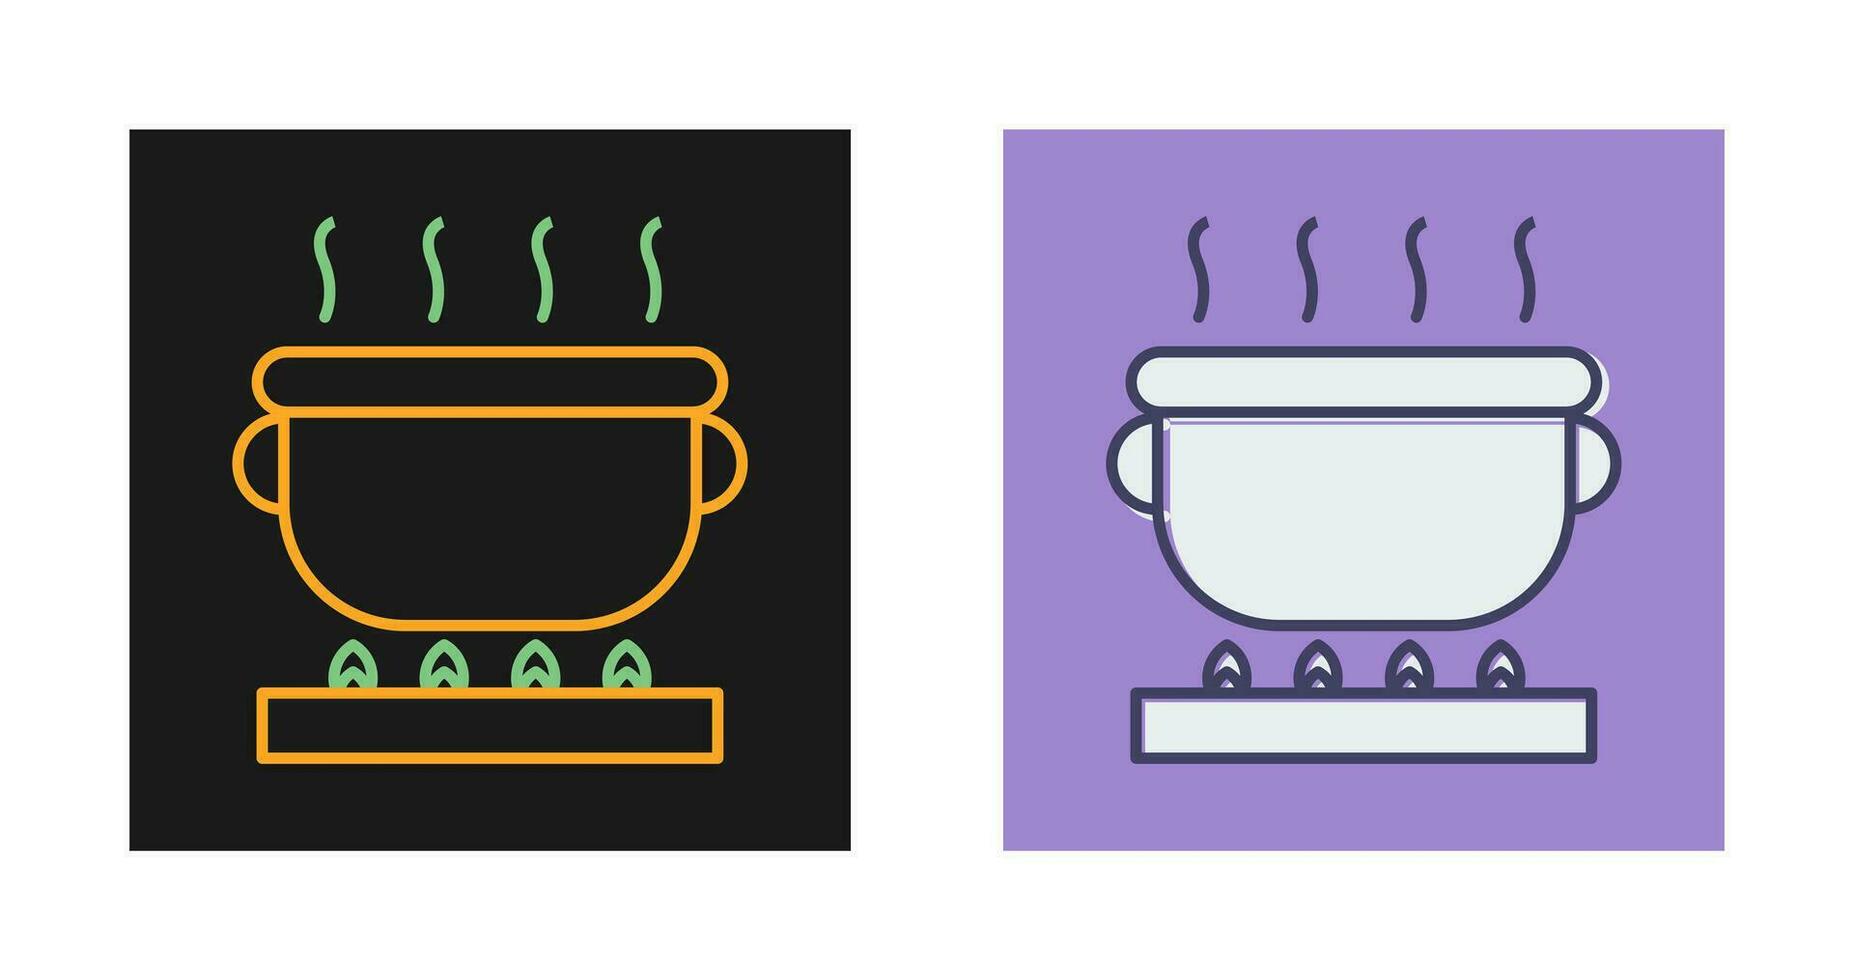 matlagning vektor ikon